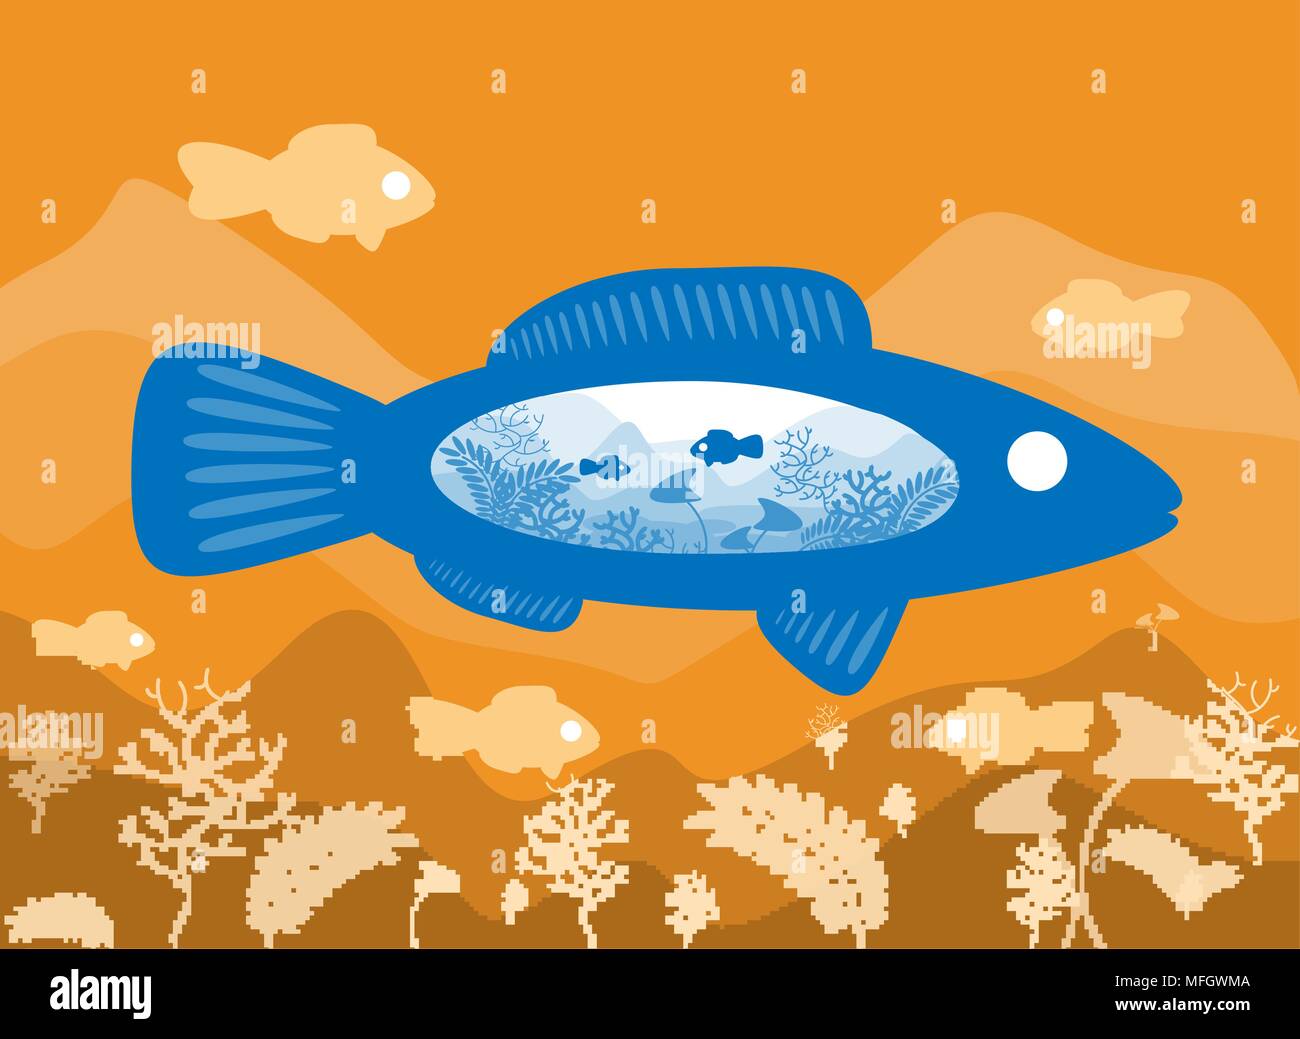 Fisch auf dem Hintergrund der Meeresboden mit einer abstrakten Darstellung der Welt. Vector Illustration Stock Vektor